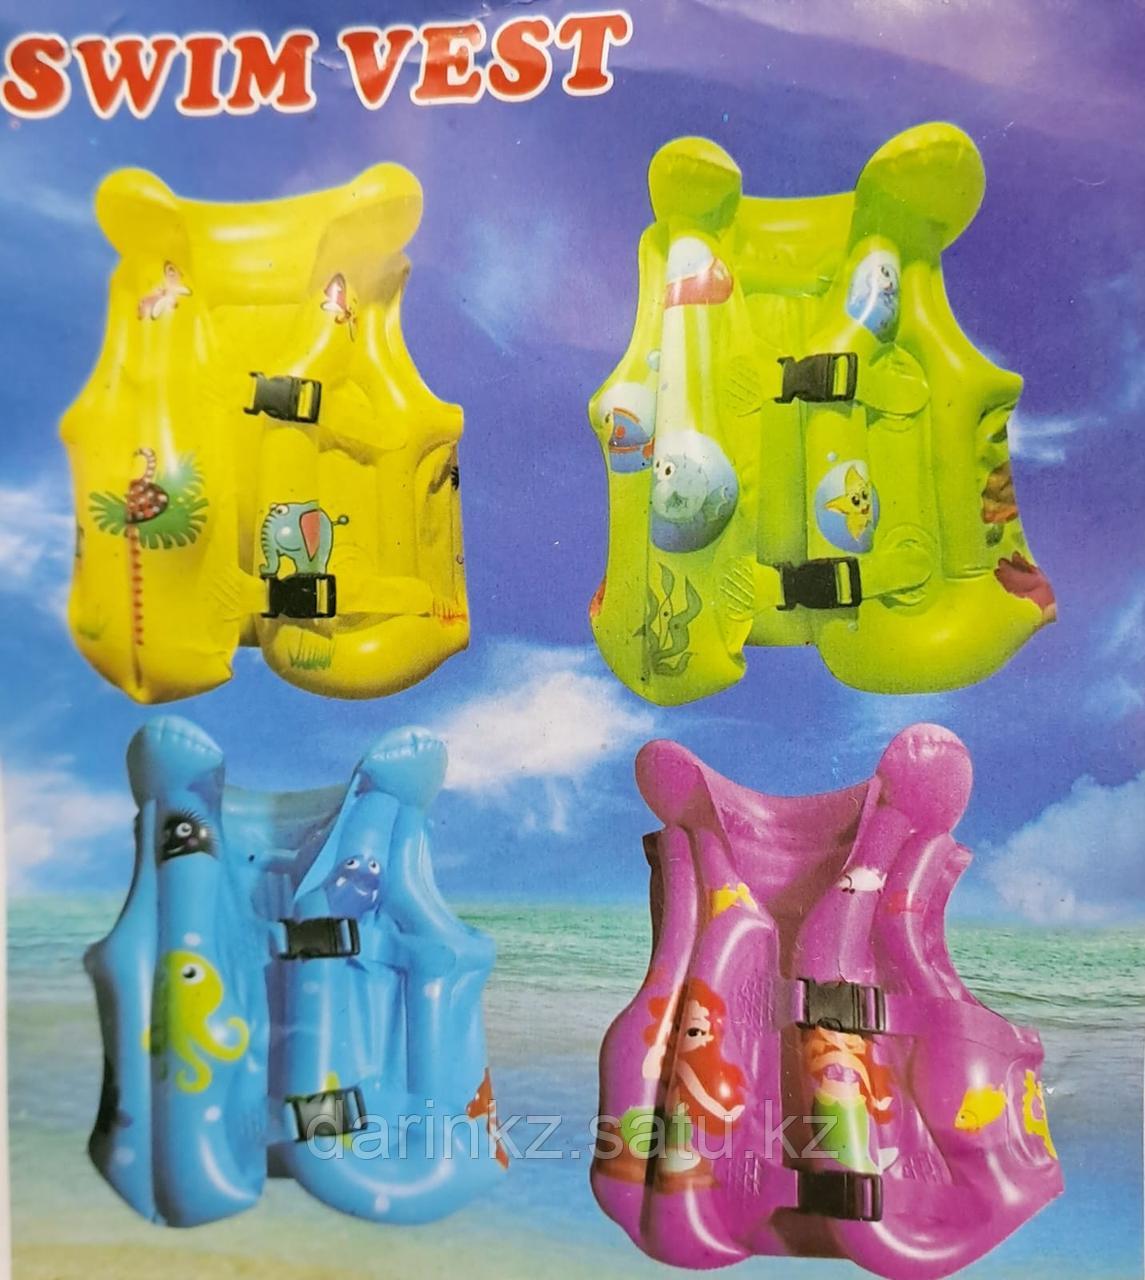 Жилет для плавания Swim vest в ассортименте